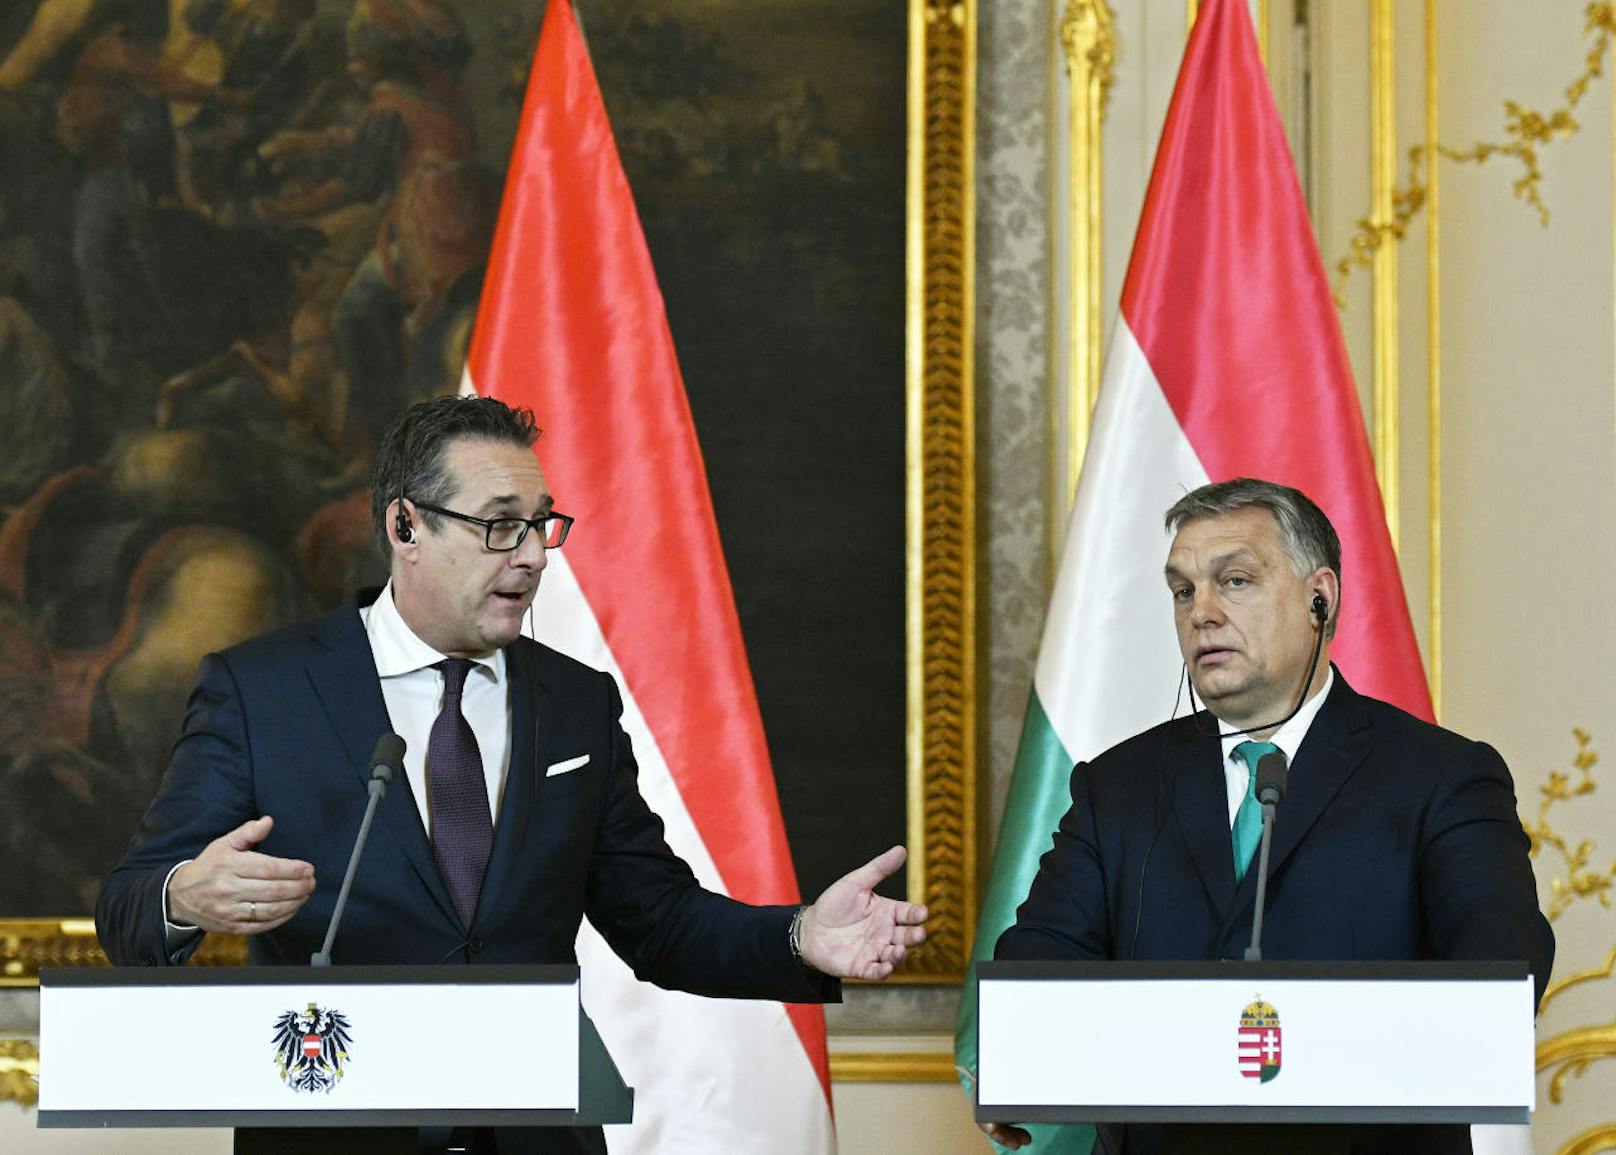 Bei der gemeinsamen Presseeerklärung nach Heinz-Christian Straches Gespräch mit dem ungarischen Premierminister Viktor Orbán am Dienstag war keine Flagge der EU zu sehen.